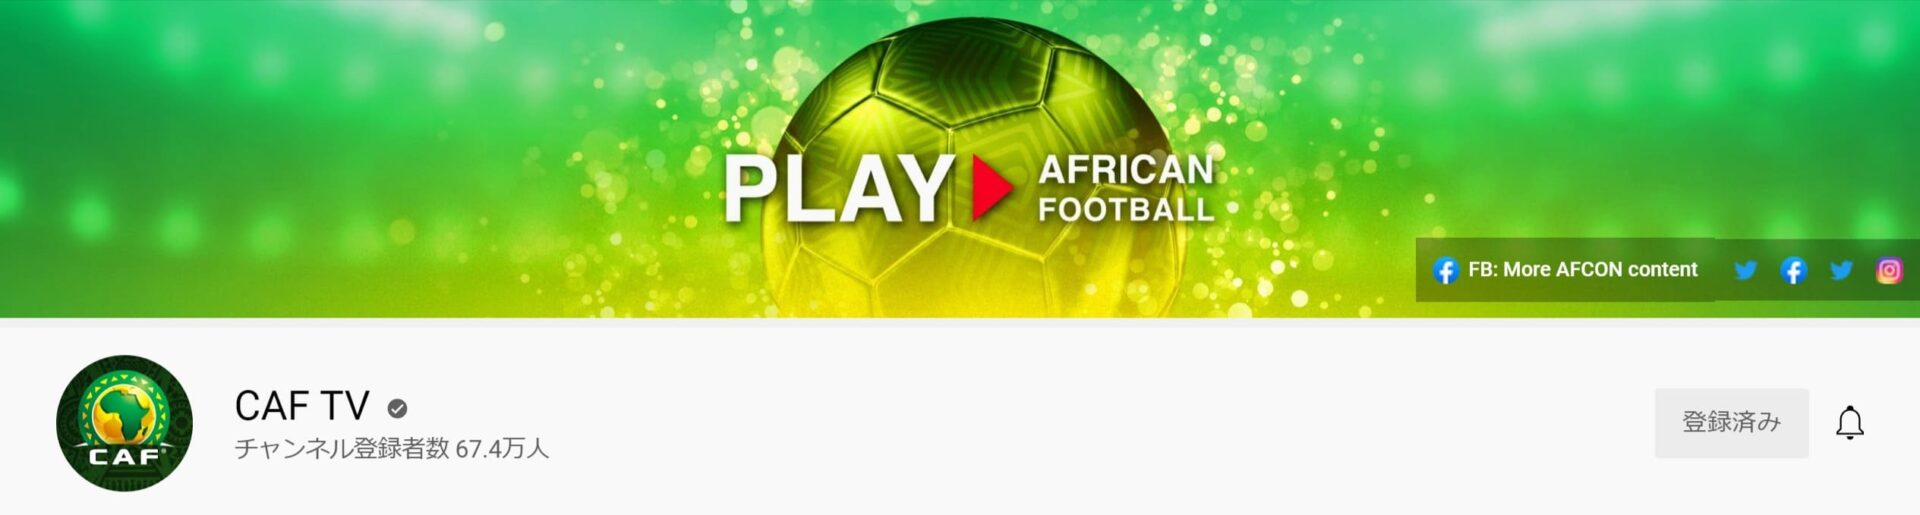 CAFTV_アフリカサッカー連盟_公式YouTubeチャンネル (1)